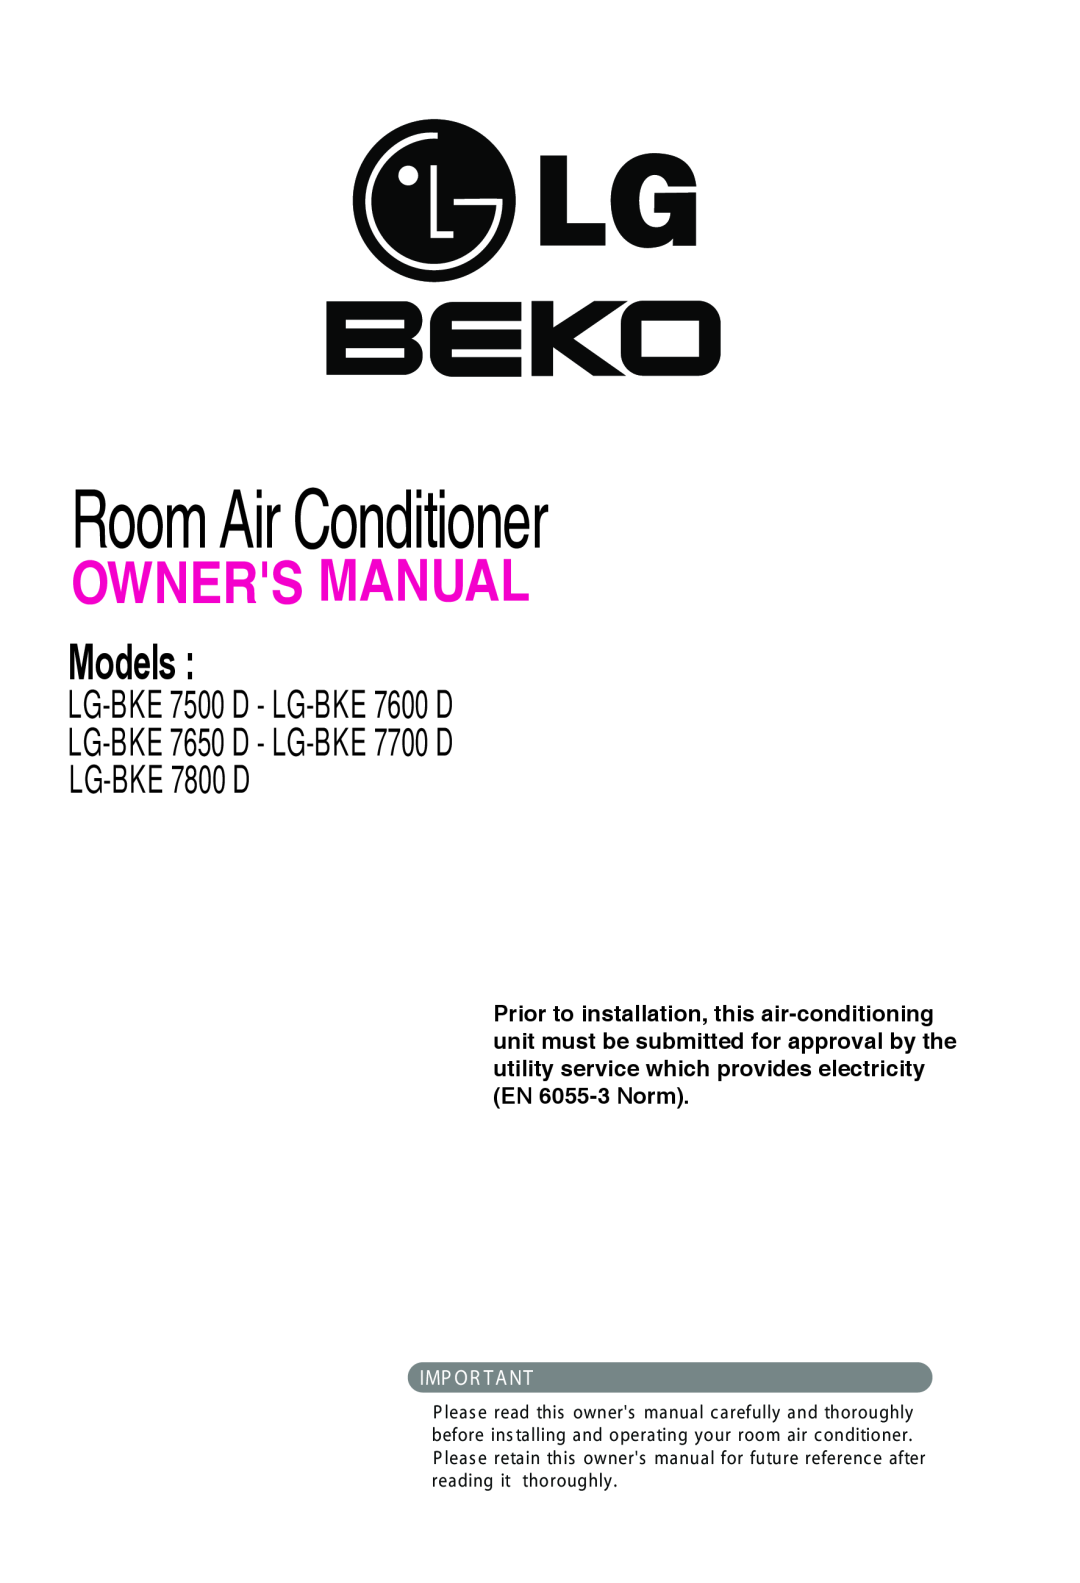 Beko LG-BKE 7800D owner manual Room Air Conditioner, Models, LG-BKE7500 D - LG-BKE7600 D, Imp Or T A Nt 